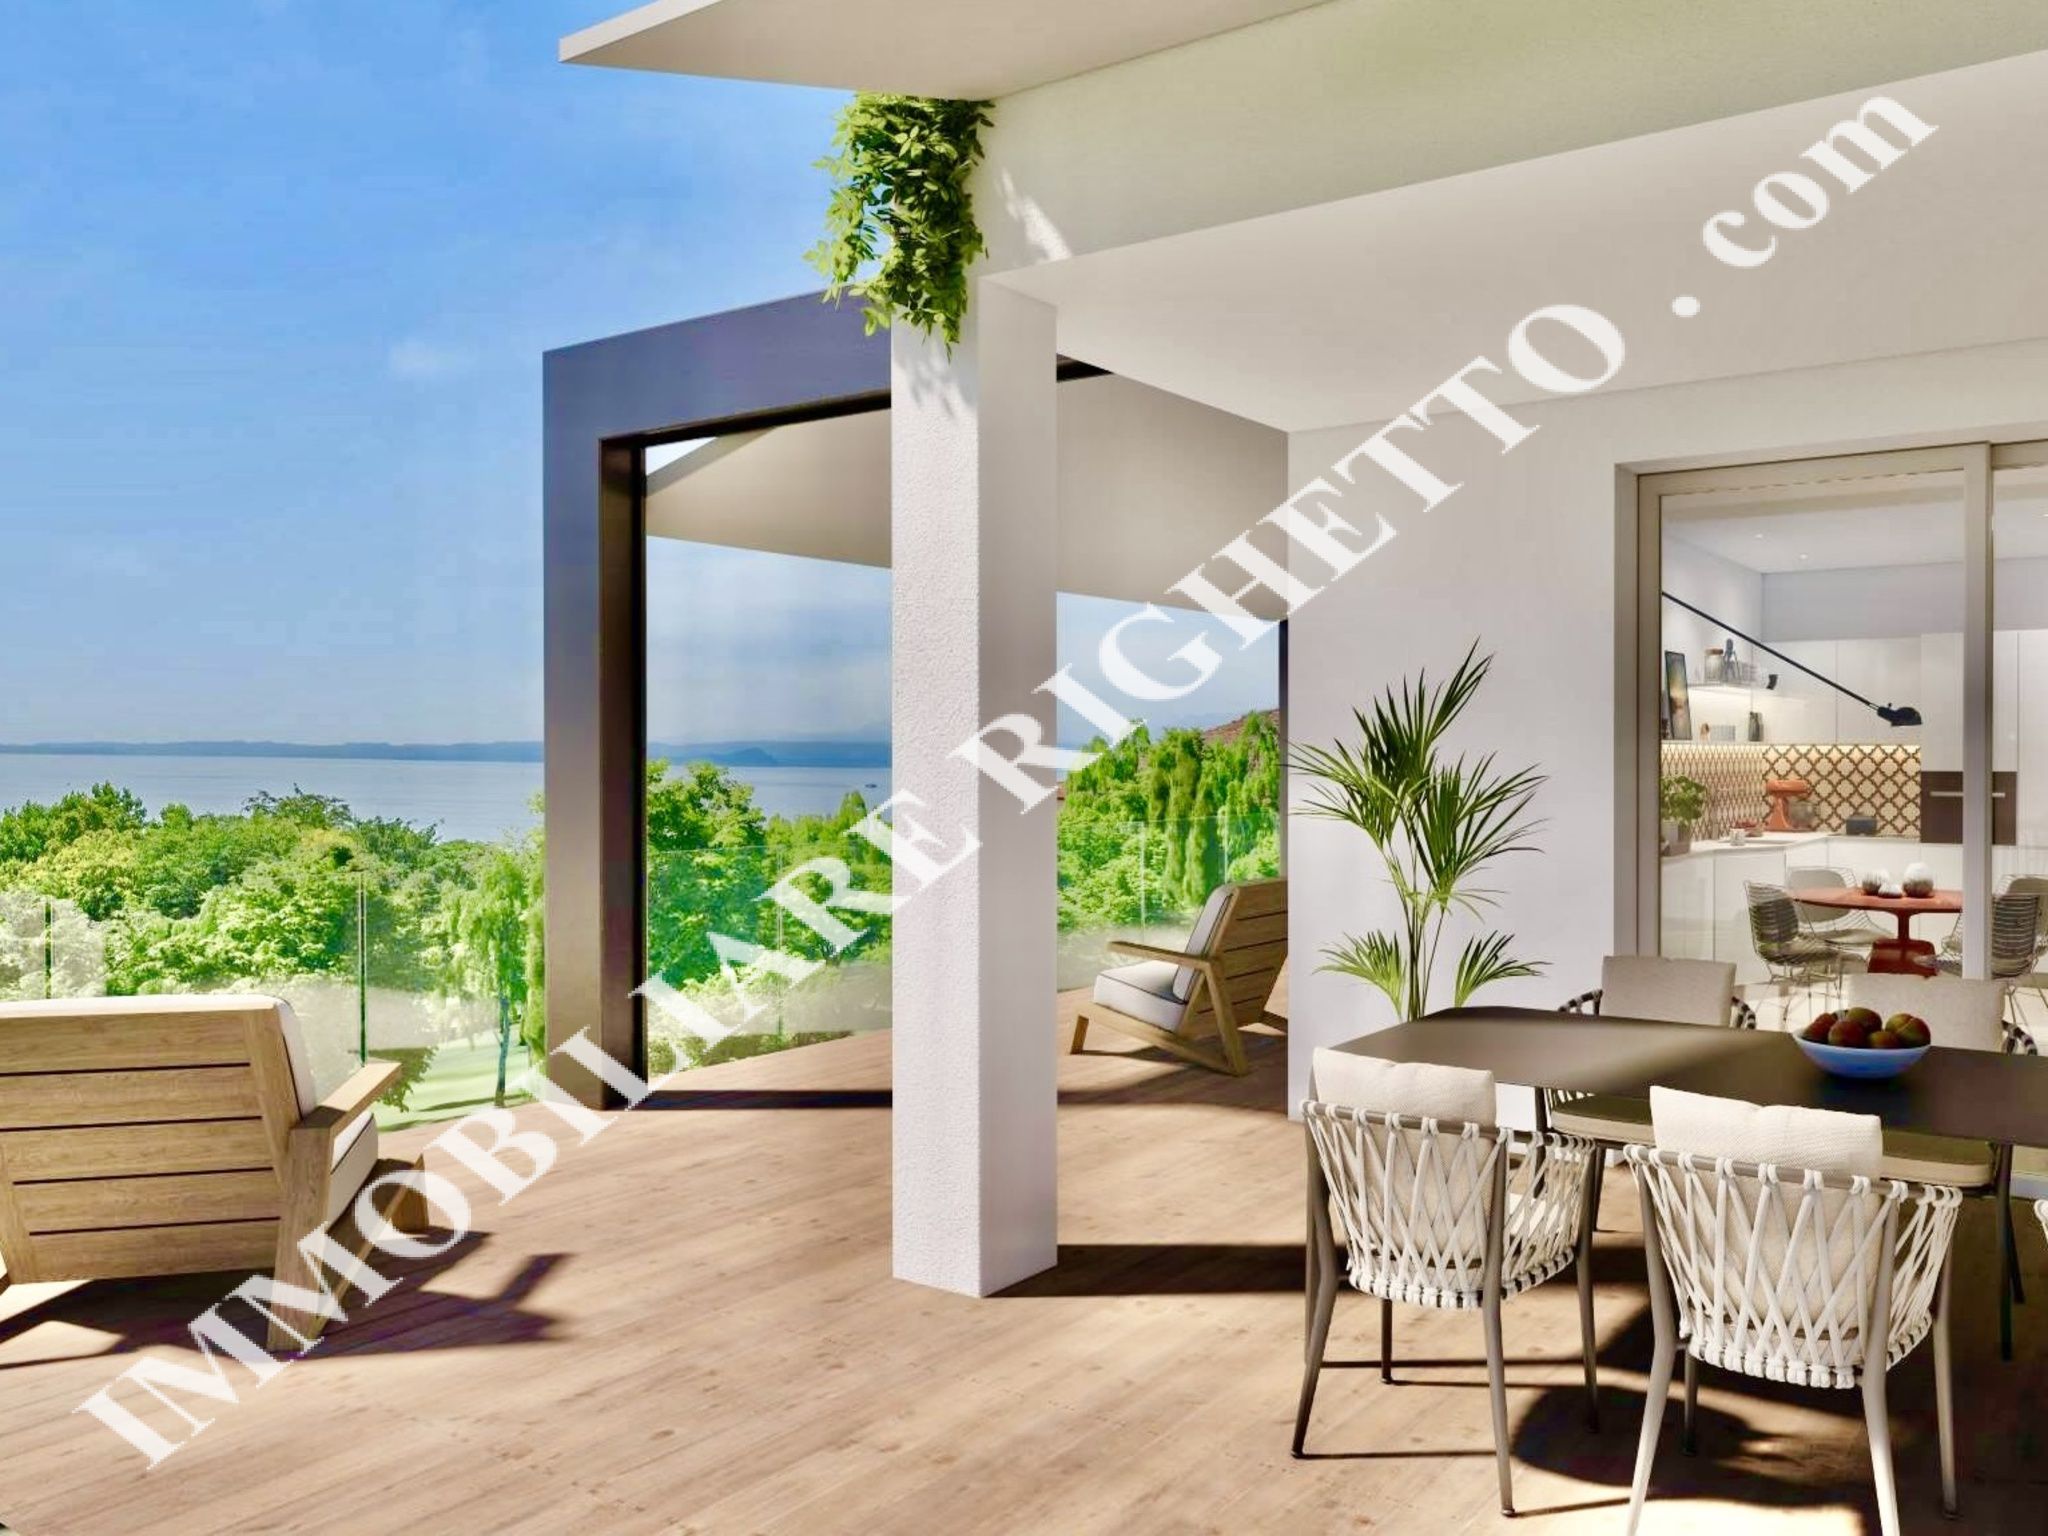 bieten Immobilien zum Verkauf RESIDENZ VILLA MARTA: NEUBAU-Wohnungen mit großen Terrassen und WUNDERBAREM SEEBLICK